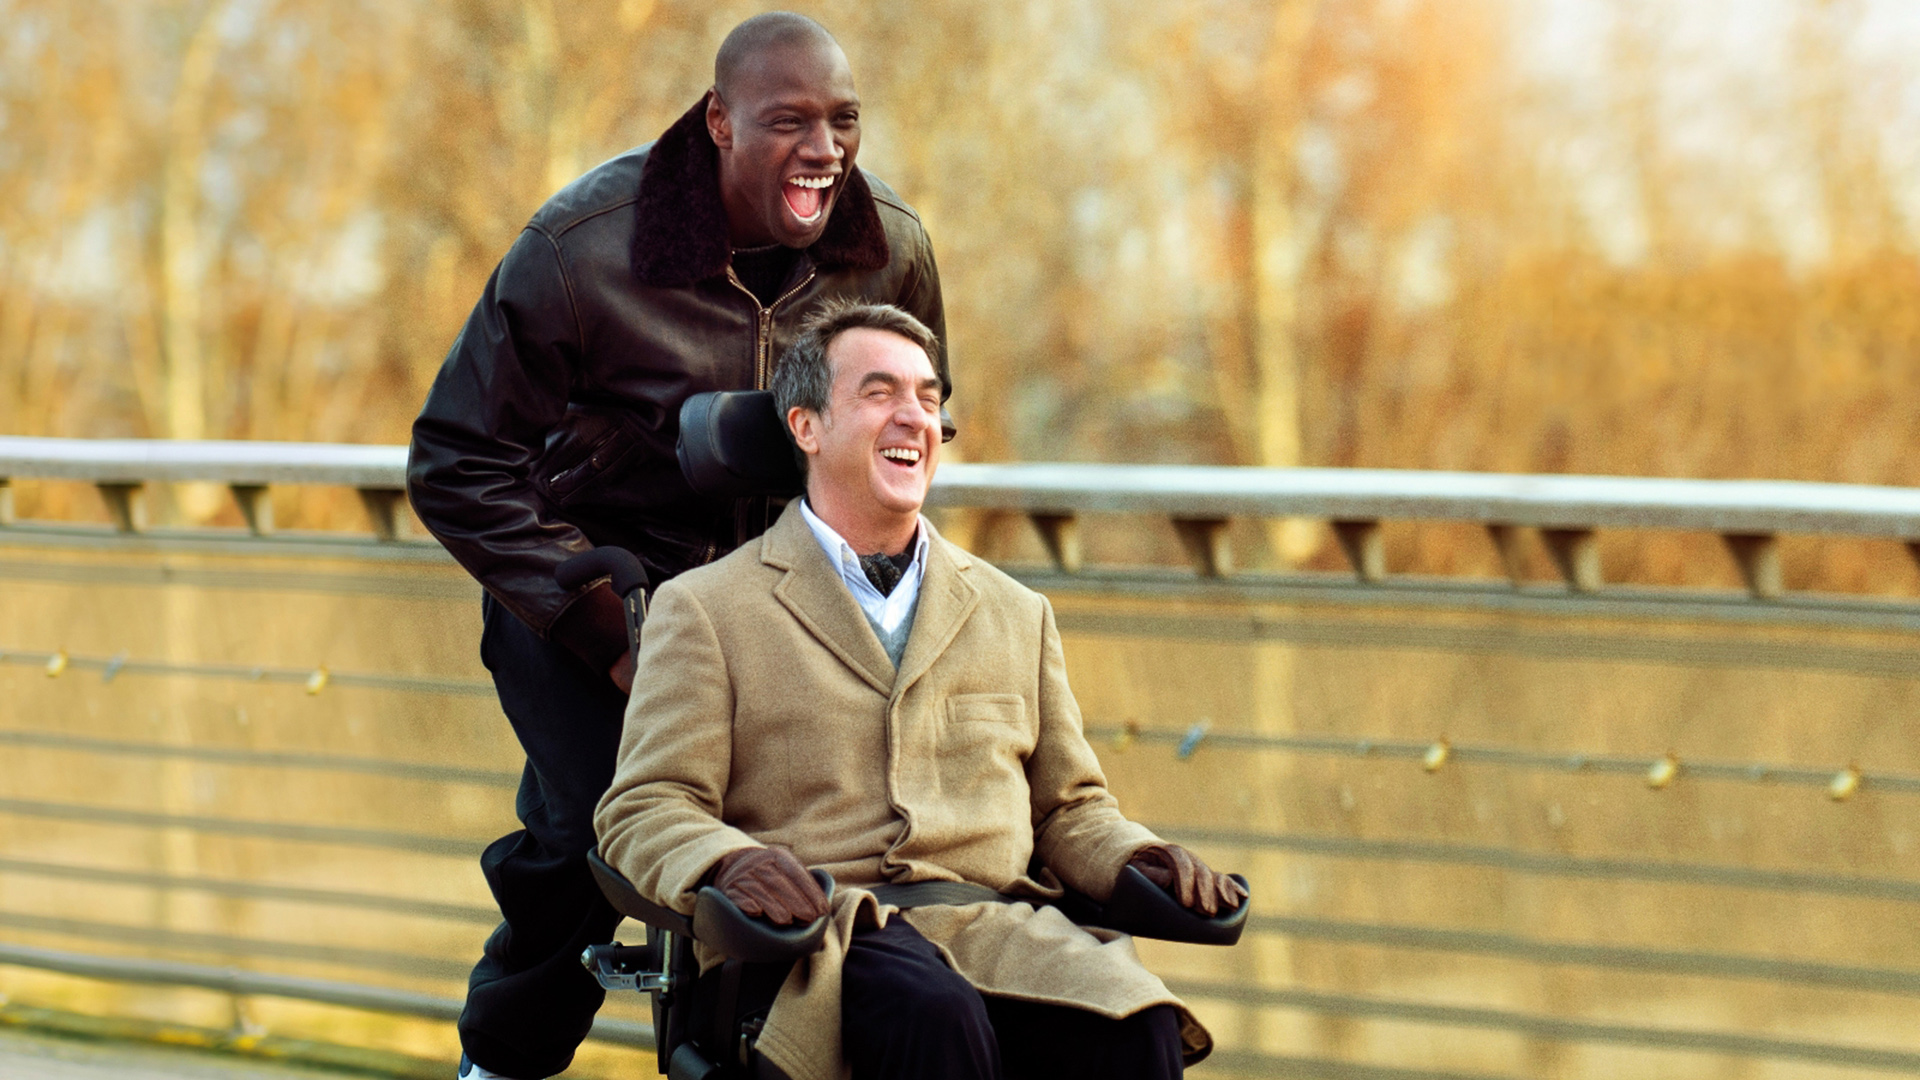 Негр и мужик в инвалидном кресле